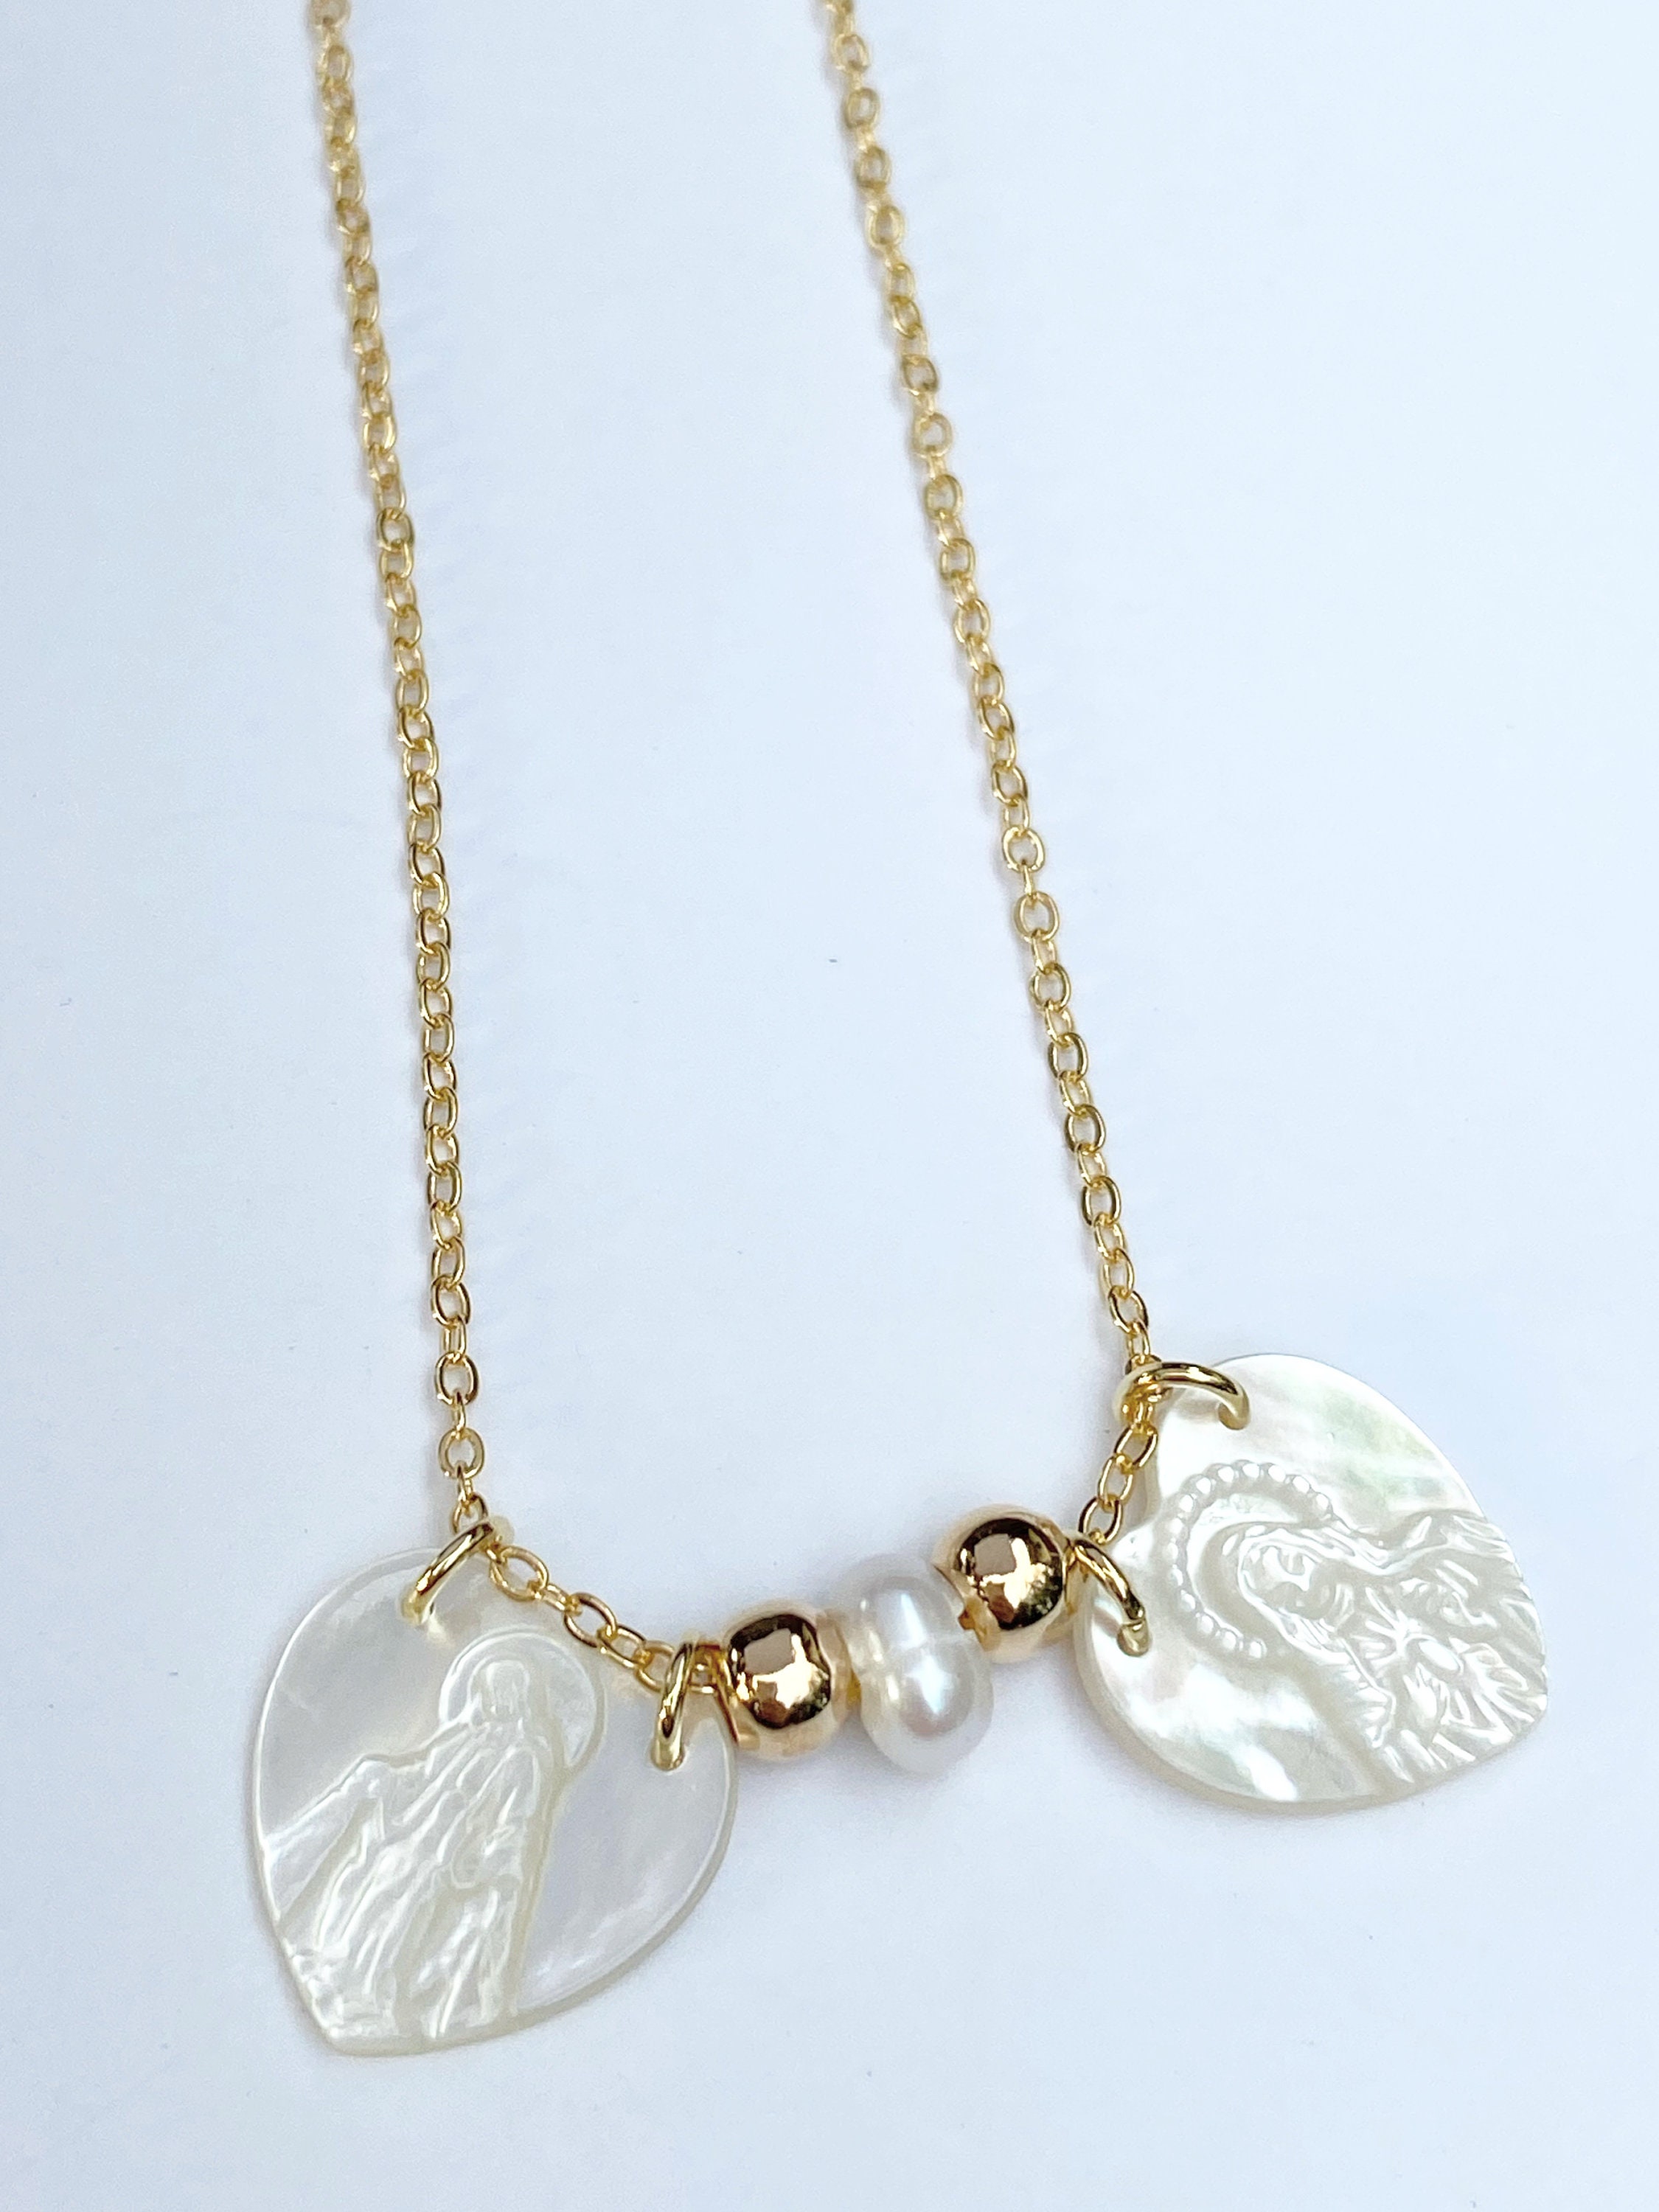 Gold Filled Scapular Necklace Scapular Medal Virgin Mary - Etsy